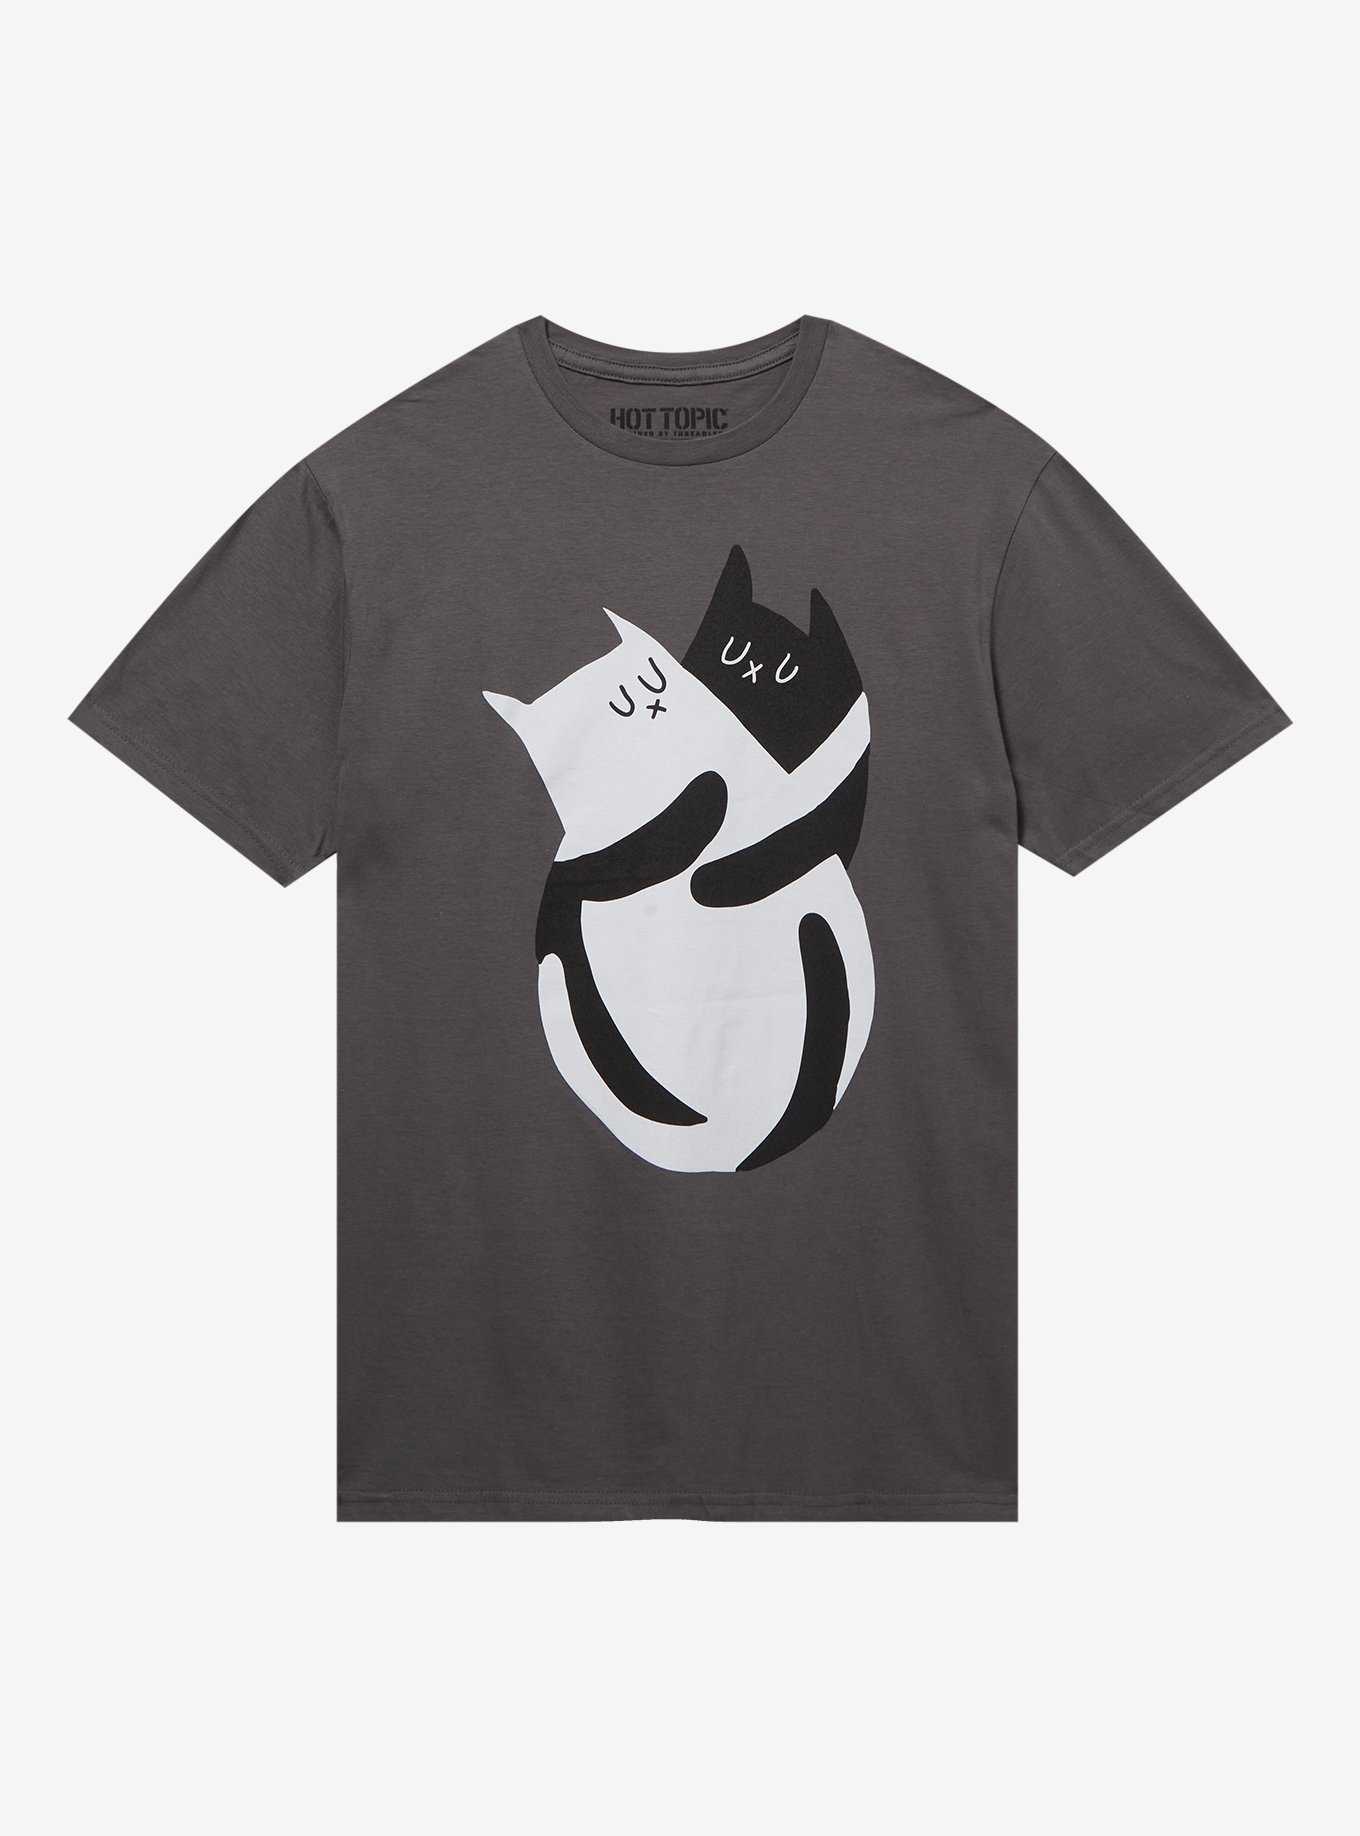  Superman Black S-Shield Logo Men's T-Shirt : Ropa, Zapatos y  Joyería